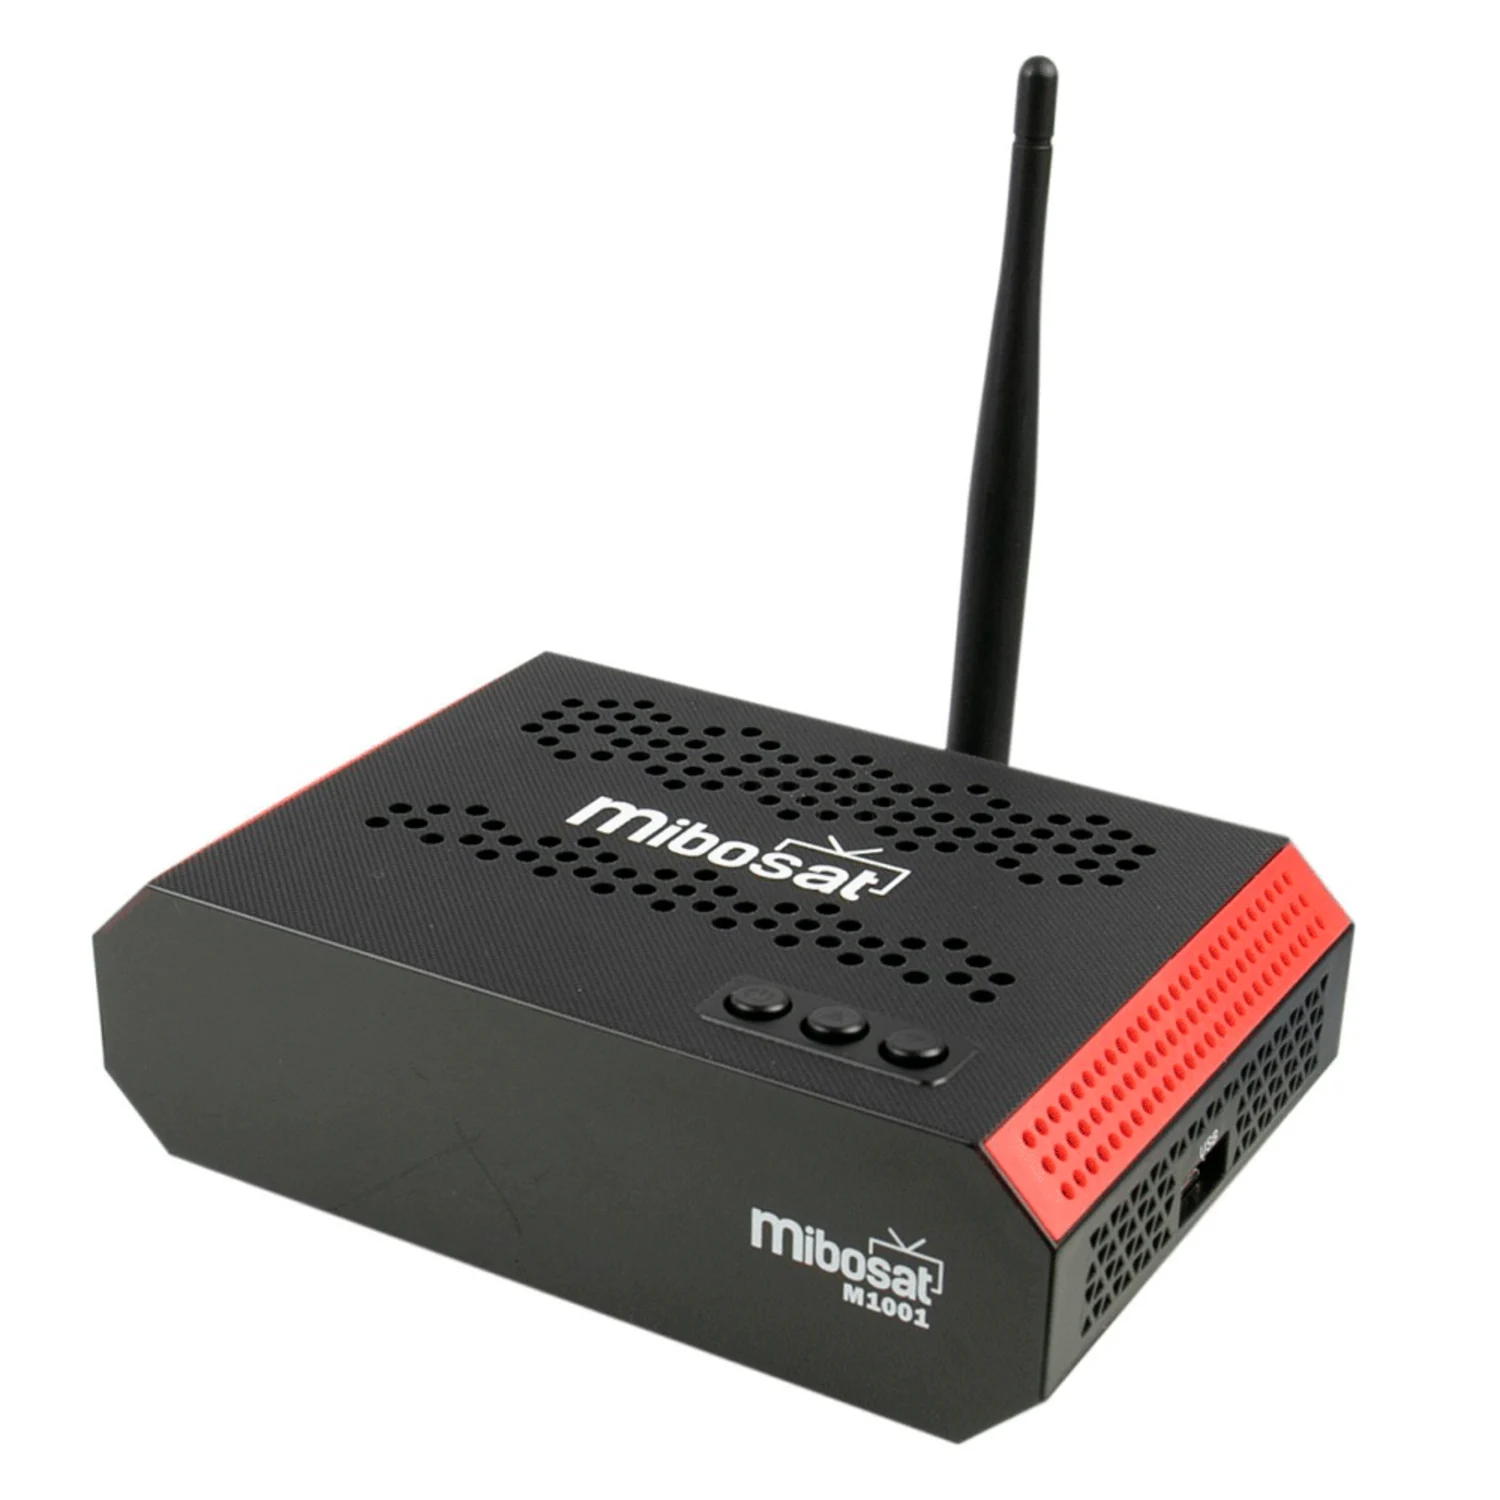 Receptor Mibosat M1001 Full HD Wi-Fi com Chip - Preto